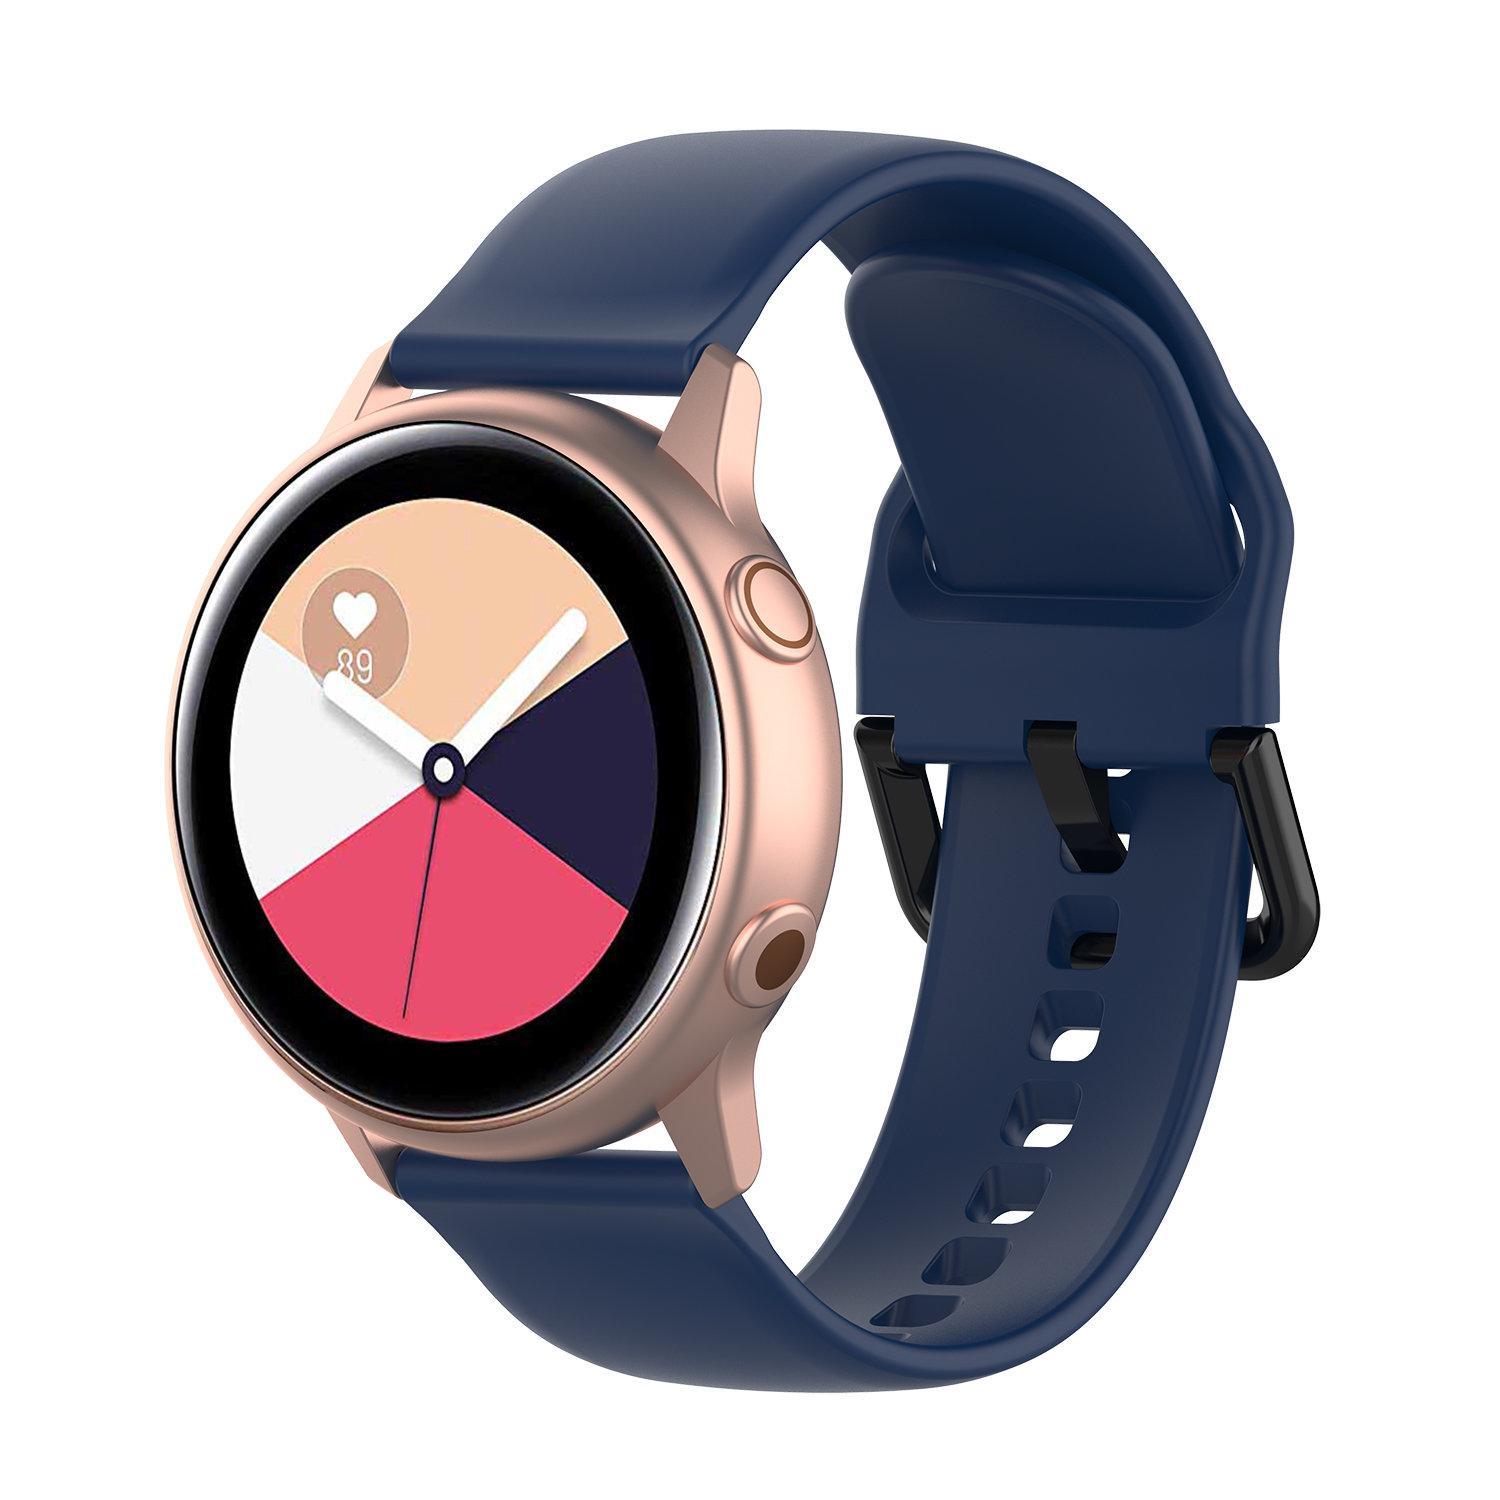 Armband till Samsung Galaxy Watch 42mm - marinblå (S) - Elgiganten